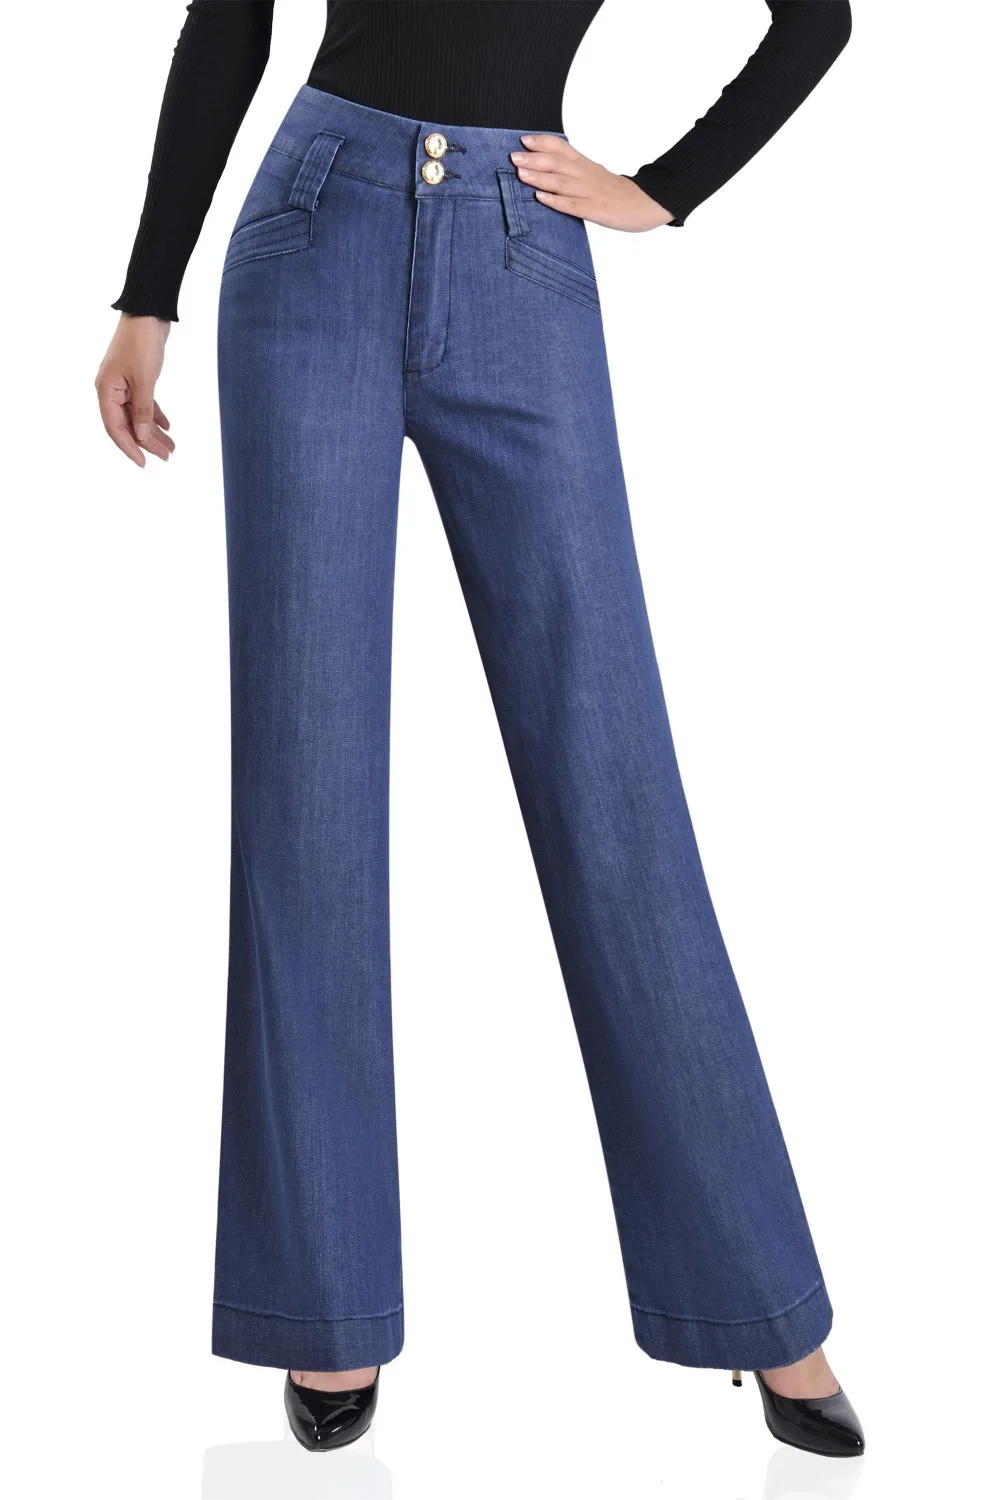 Осенние женские широкие джинсы, Женская высокая поясная пряжка, большие прямые джинсовые штаны, большие размеры, синие брюки 28-35